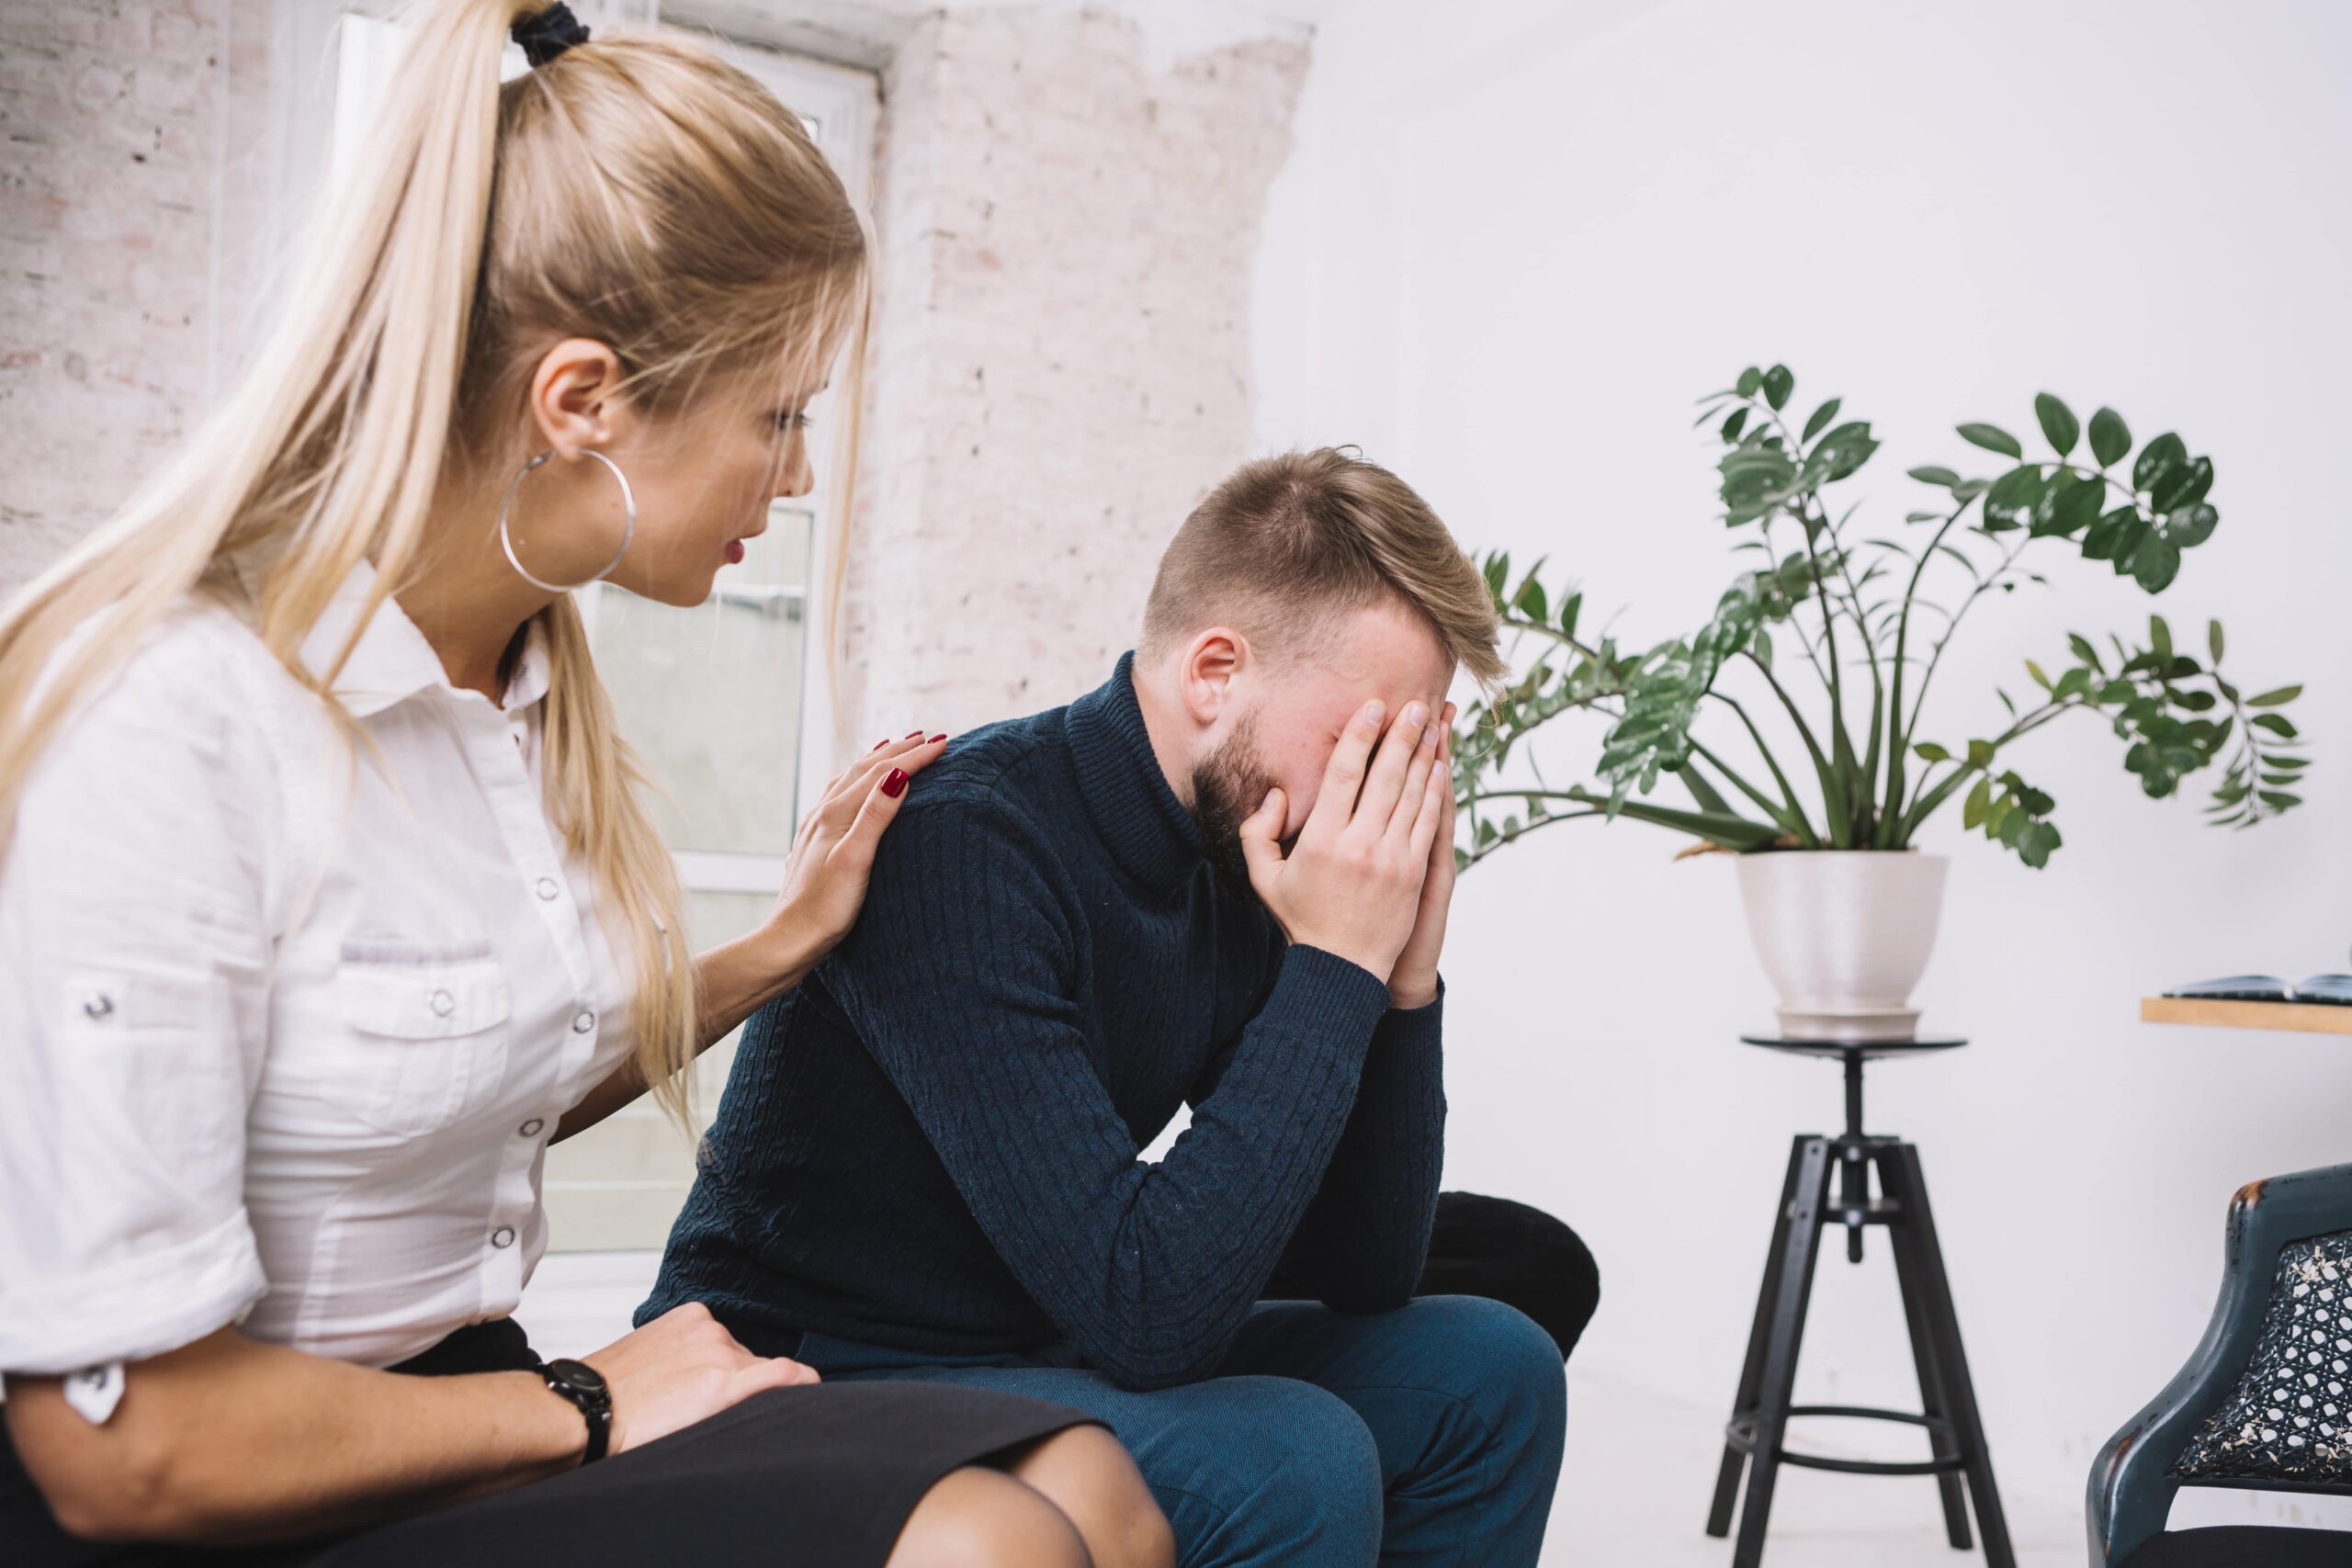 Une femme apporte son soutien à un collègue en difficulté qui est sur le point de pleurer